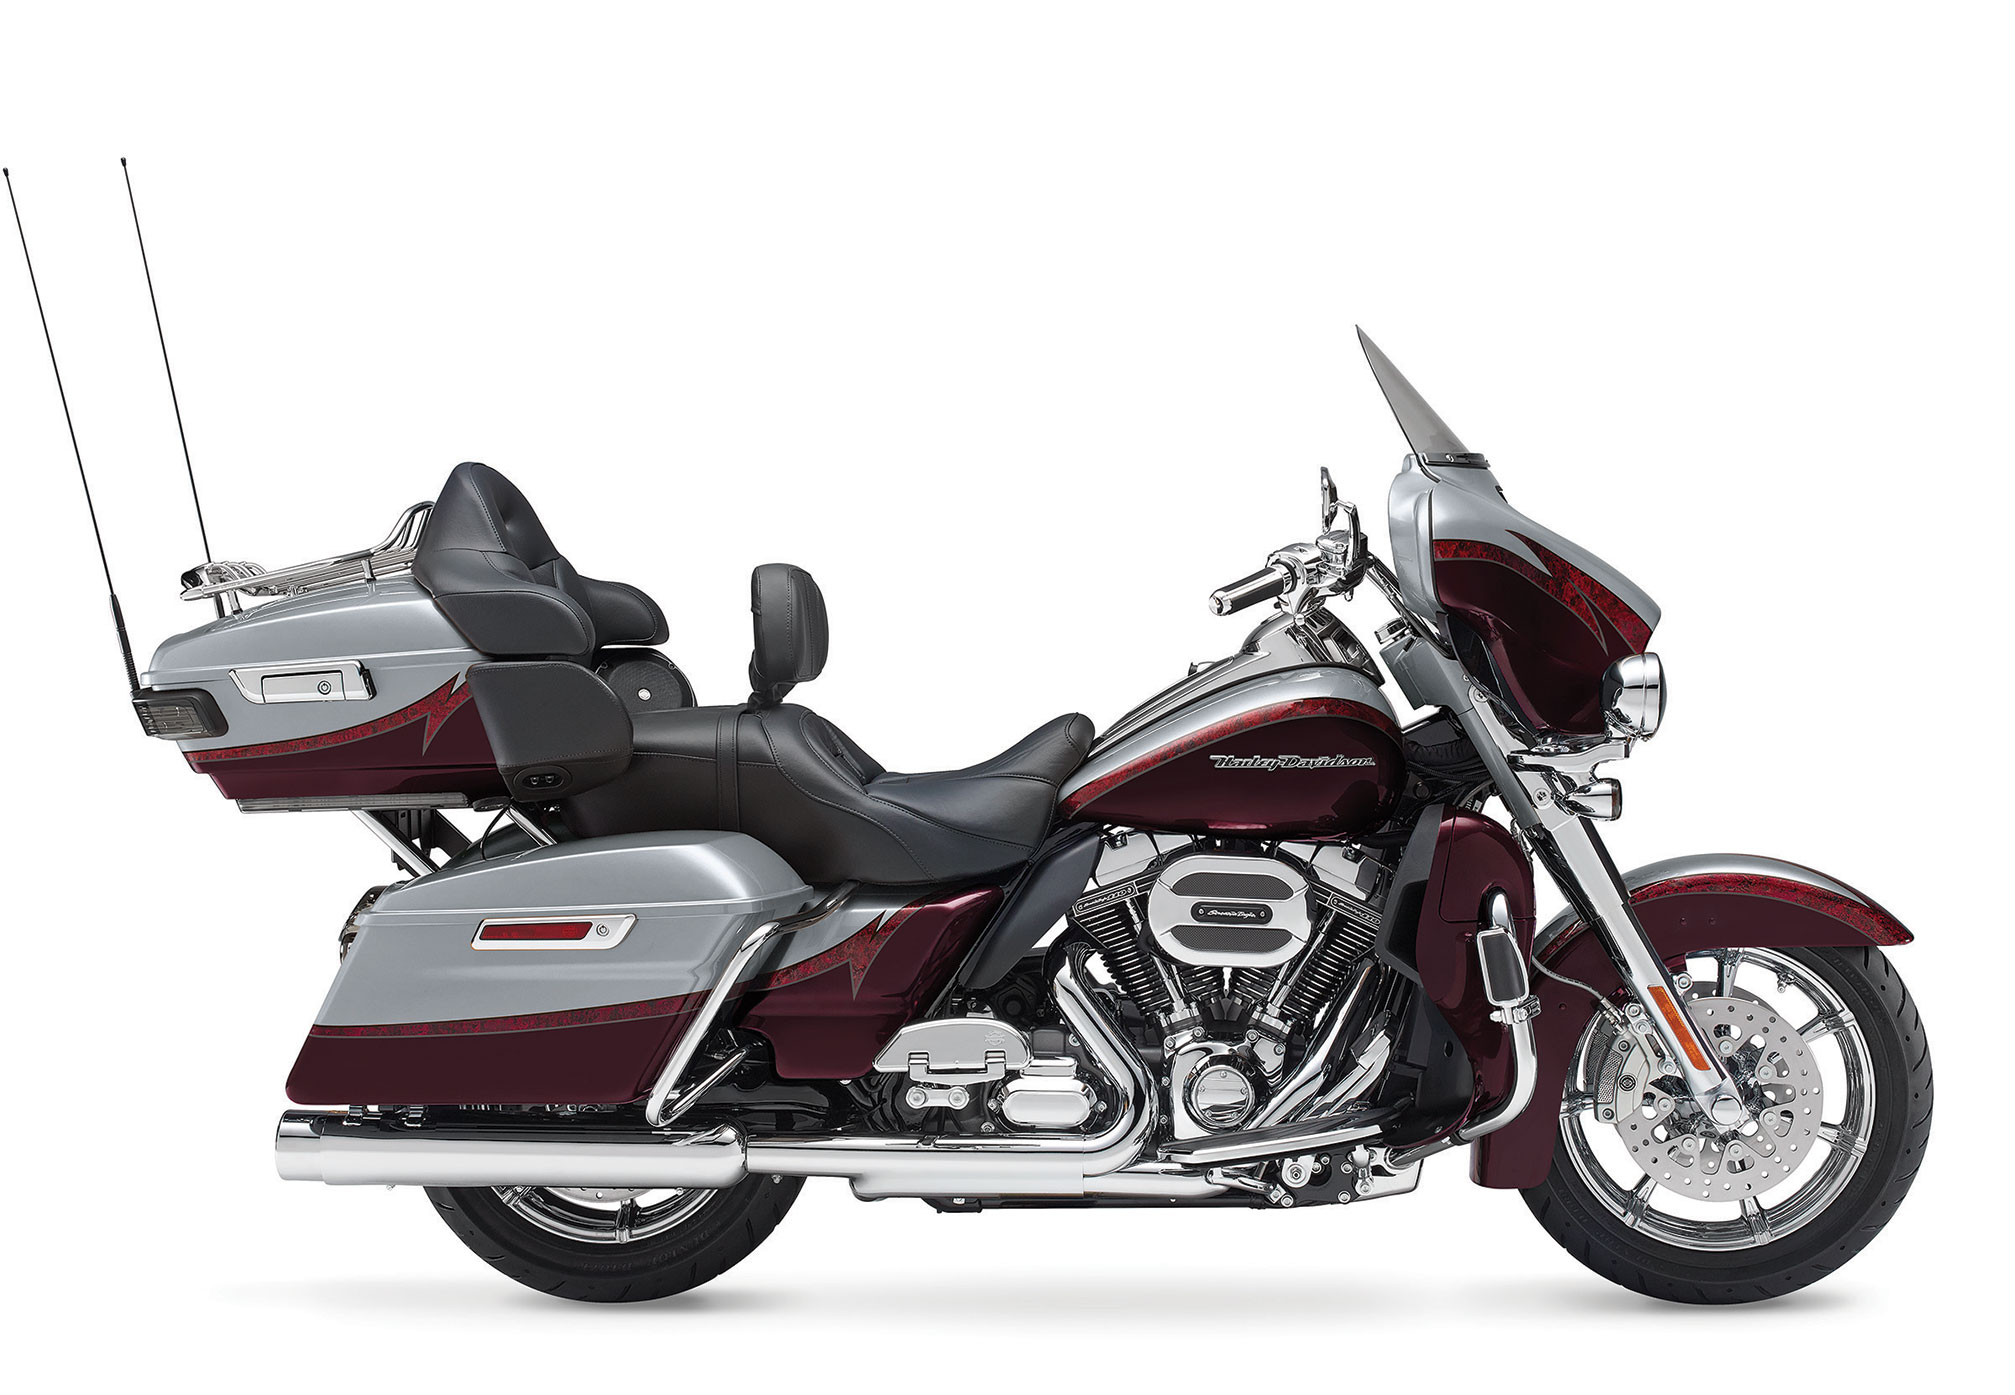 2015 Harley Davidson Flhtkse Cvo Limited Review